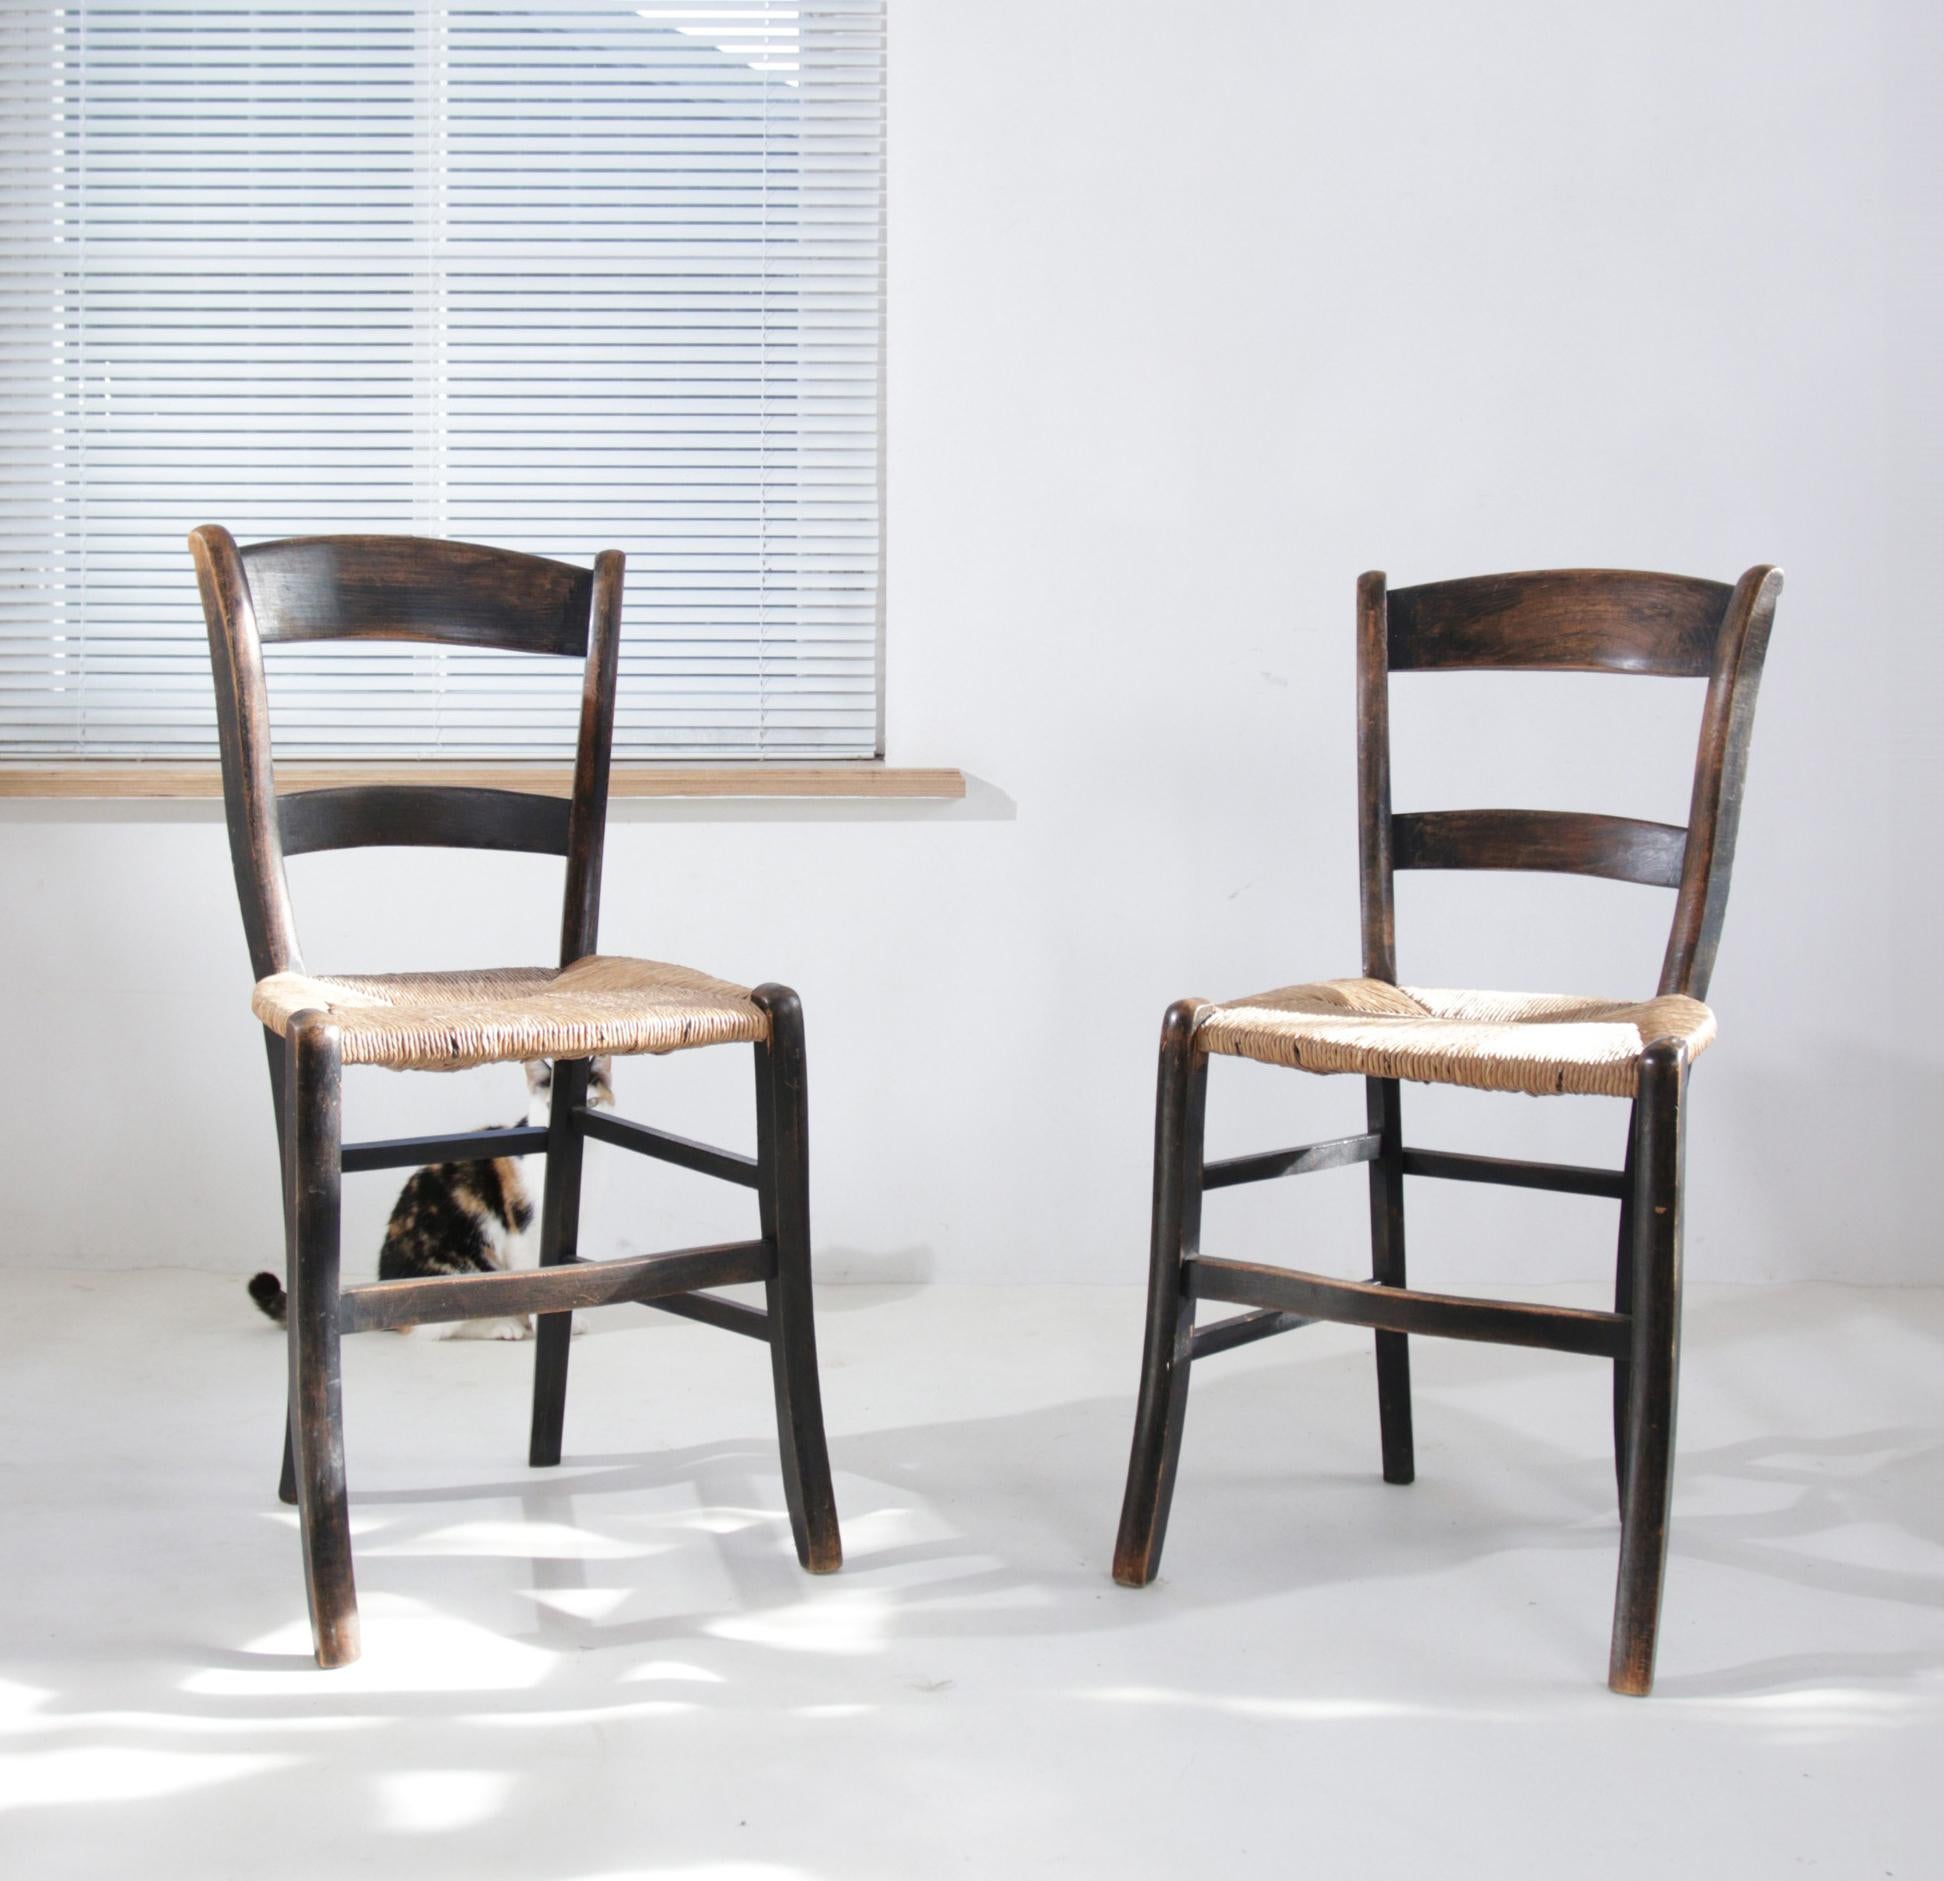 Ces élégantes chaises en bois, datant vraisemblablement du début ou du milieu du XXe siècle, sont emblématiques du savoir-faire artisanal de l'époque. Le cadre en bois, de couleur sombre et d'une simplicité gracieuse, allie la fonctionnalité à une